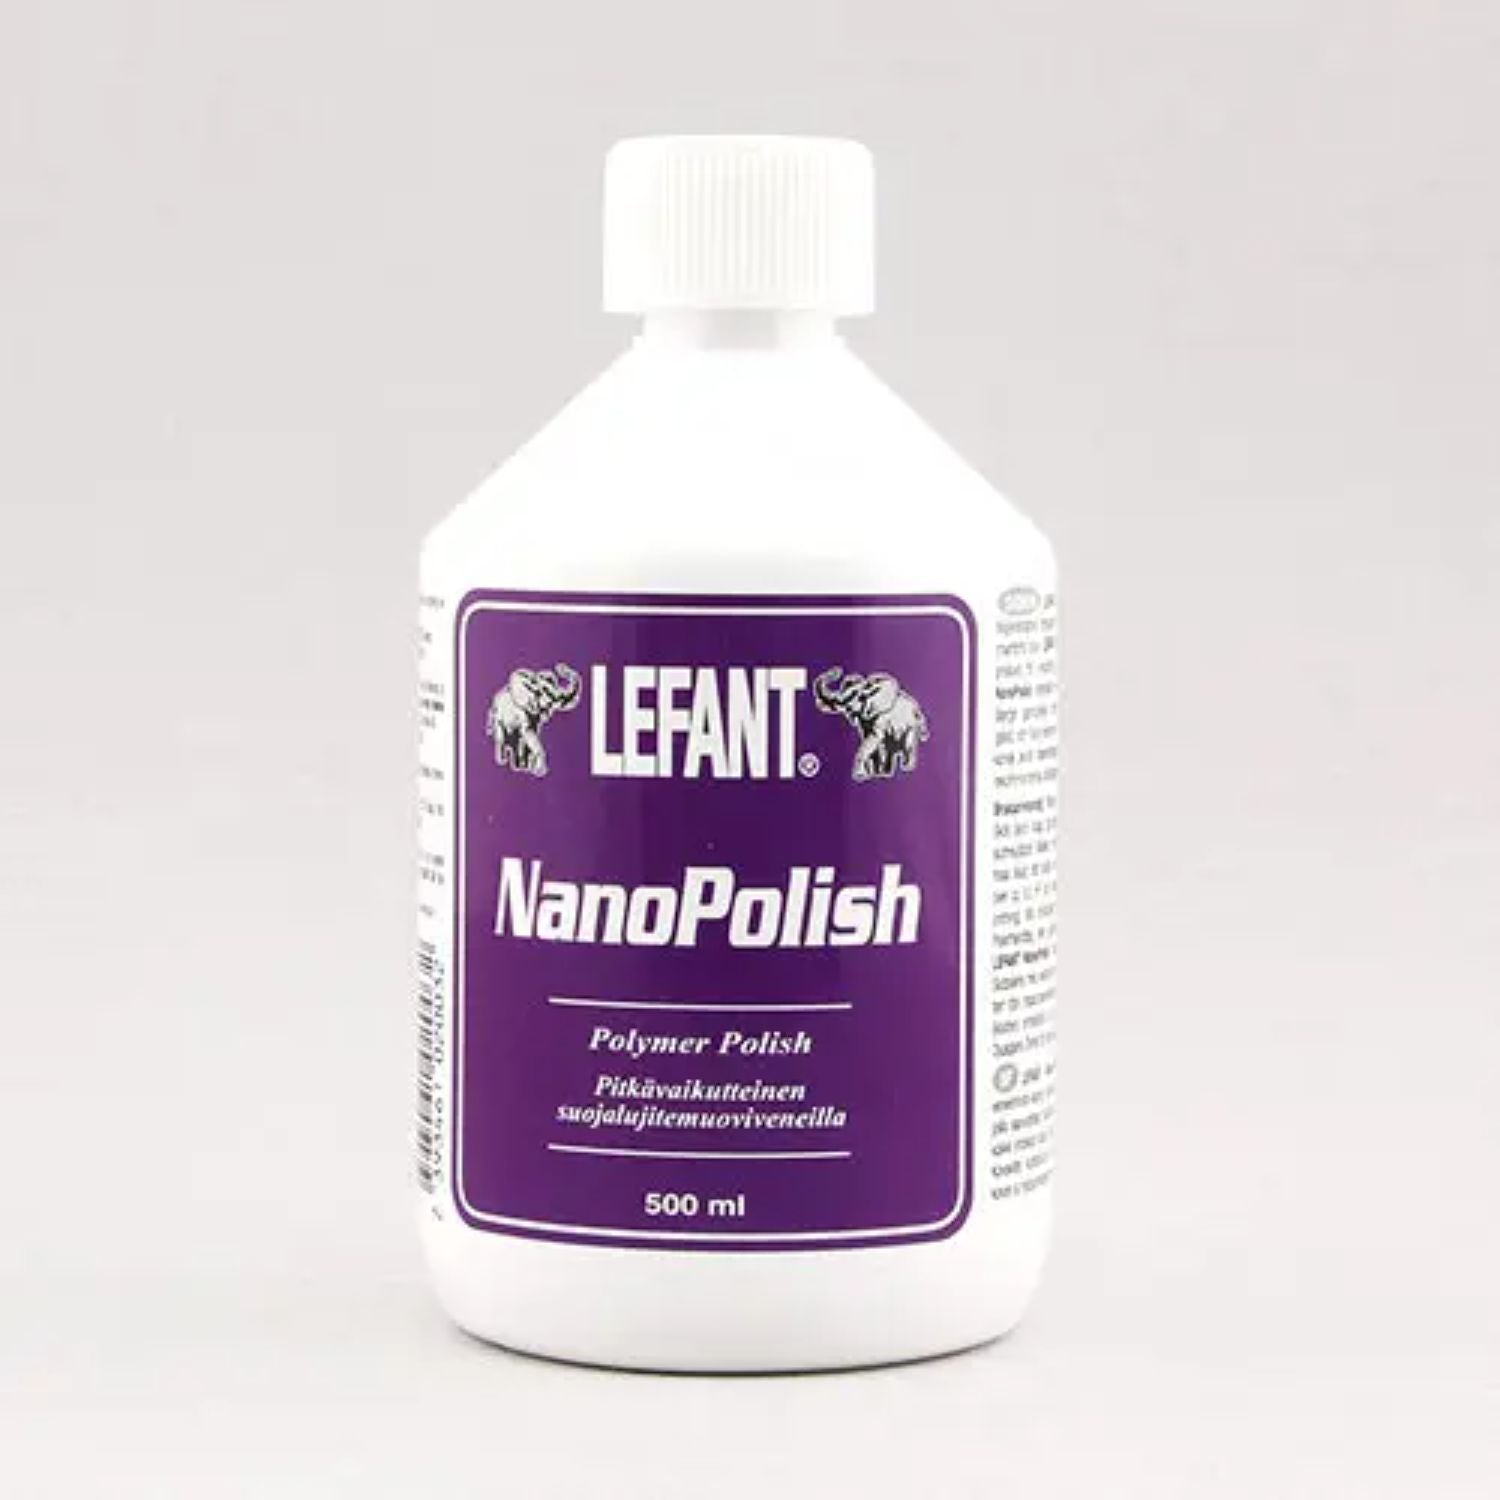 Lefant NanoPolish 500 ml